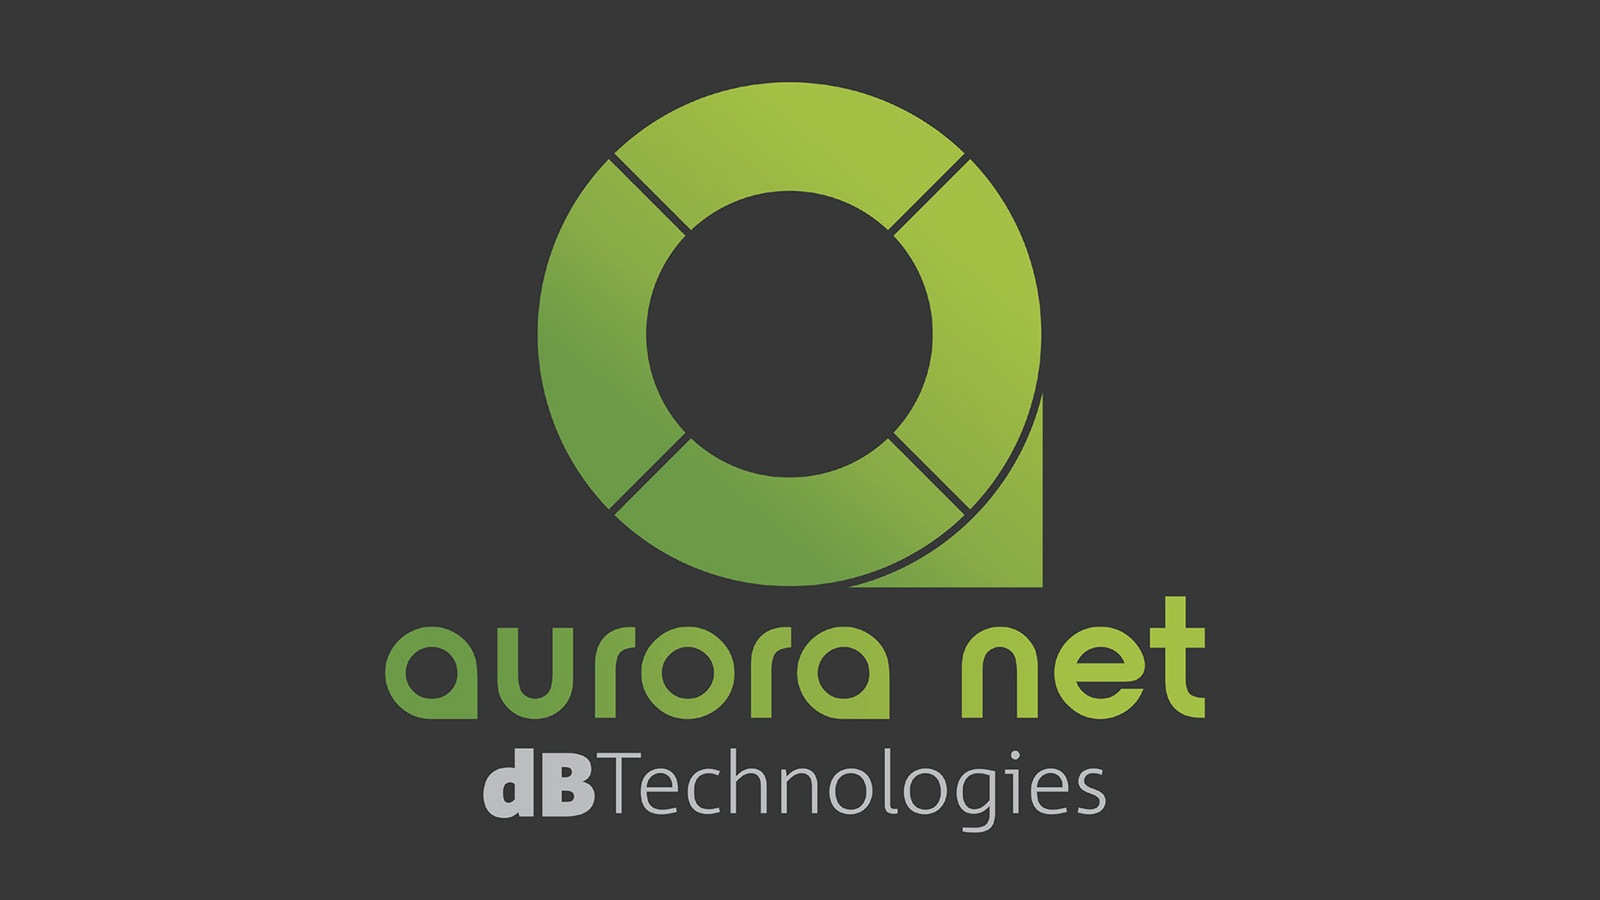 スピーカーマネジメントソフトウェア dBTechnologies AURORA NET対応